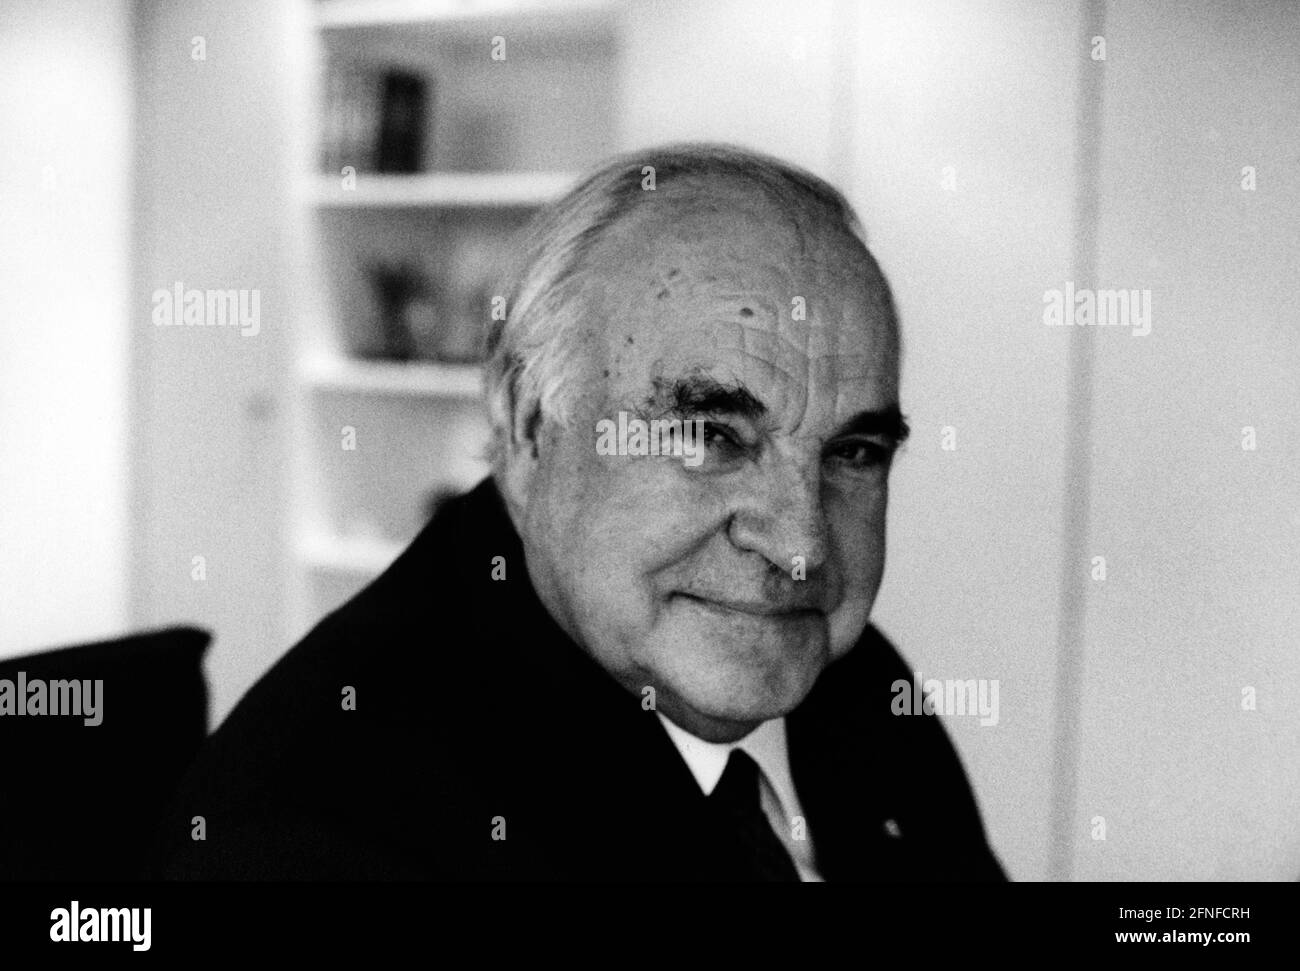 „der ehemalige deutsche Bundeskanzler Helmut Kohl (CDU) in seinem Berliner Büro, nachdem er der Öffentlichkeit die Existenz von „schwarzen Konten“ der CDU bestätigt hatte. [Automatisierte Übersetzung]' Stockfoto